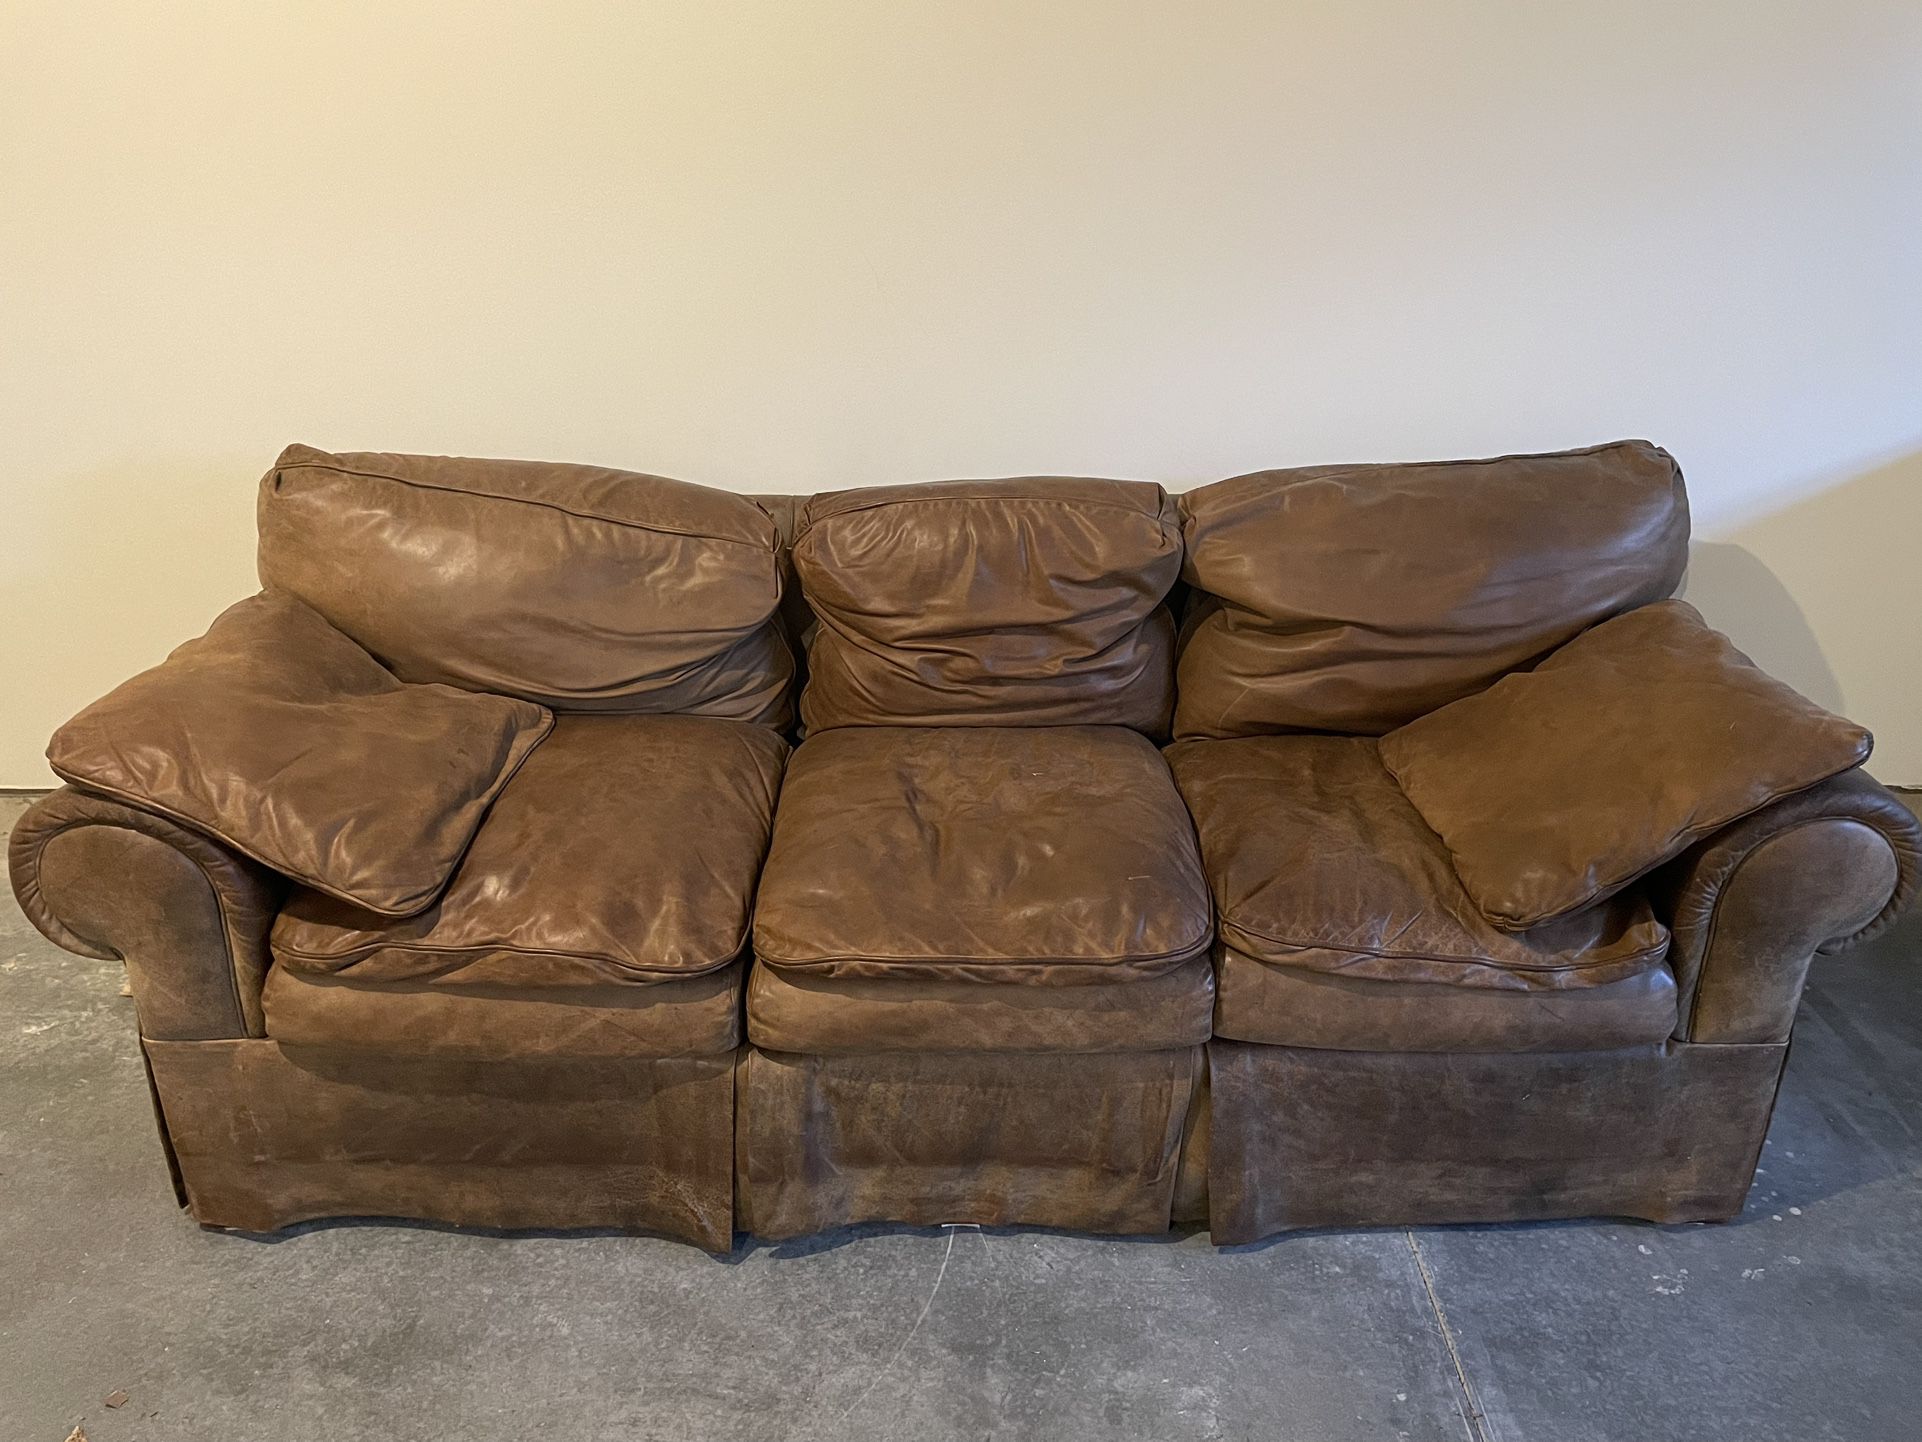 Sofa, Chair and Ottoman Free